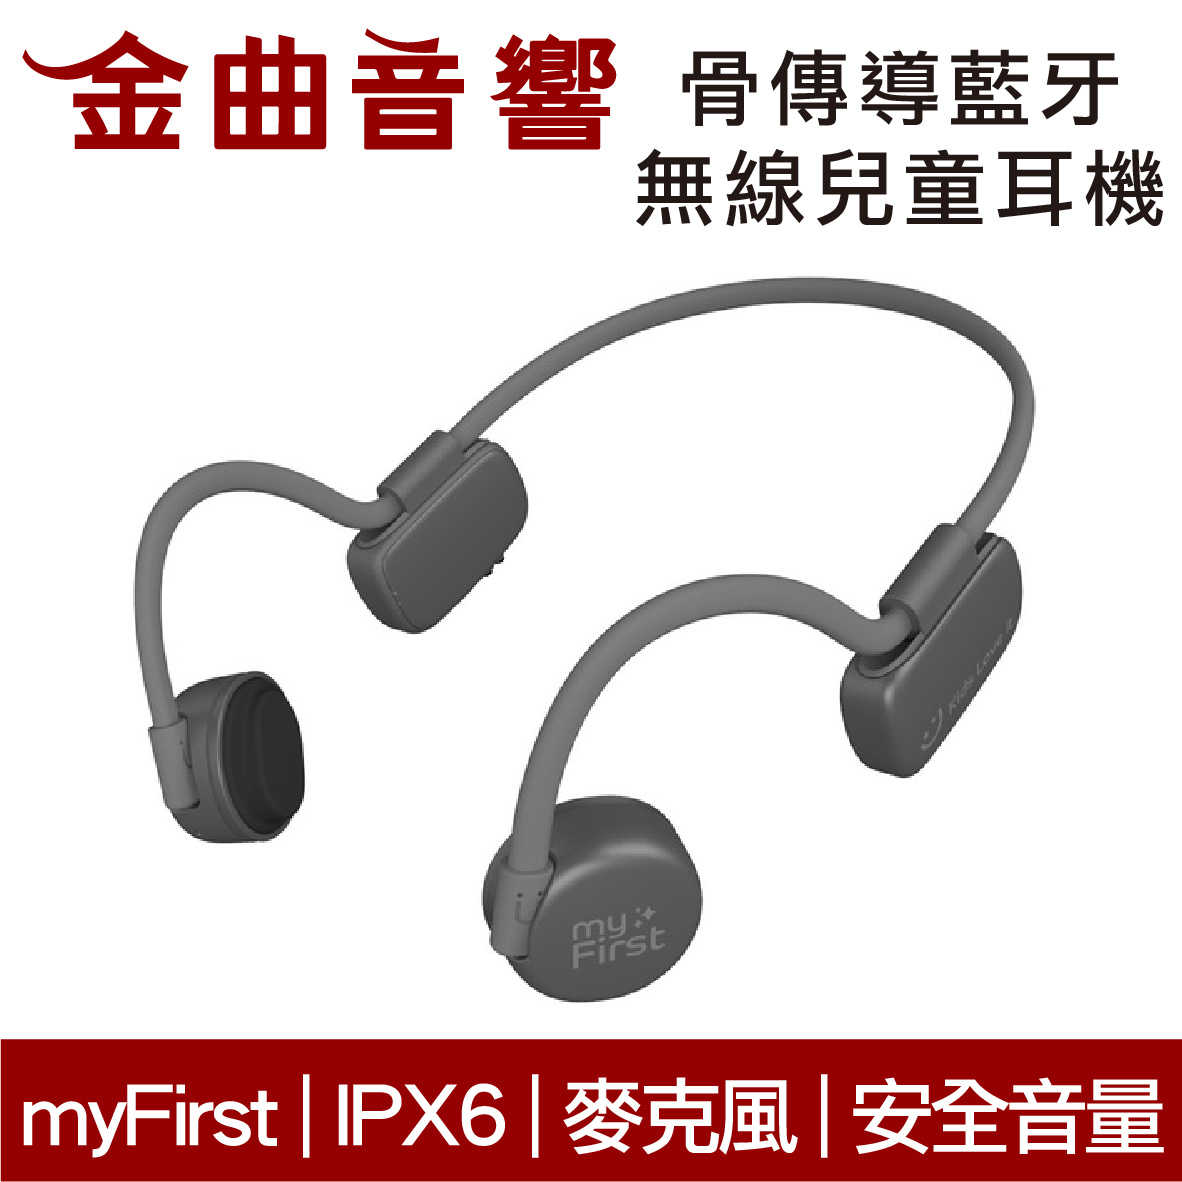 myFirst 骨傳導 無線 兒童耳機 灰色 IPX6 安全音量 內建麥克風 藍牙5.0 | 金曲音響